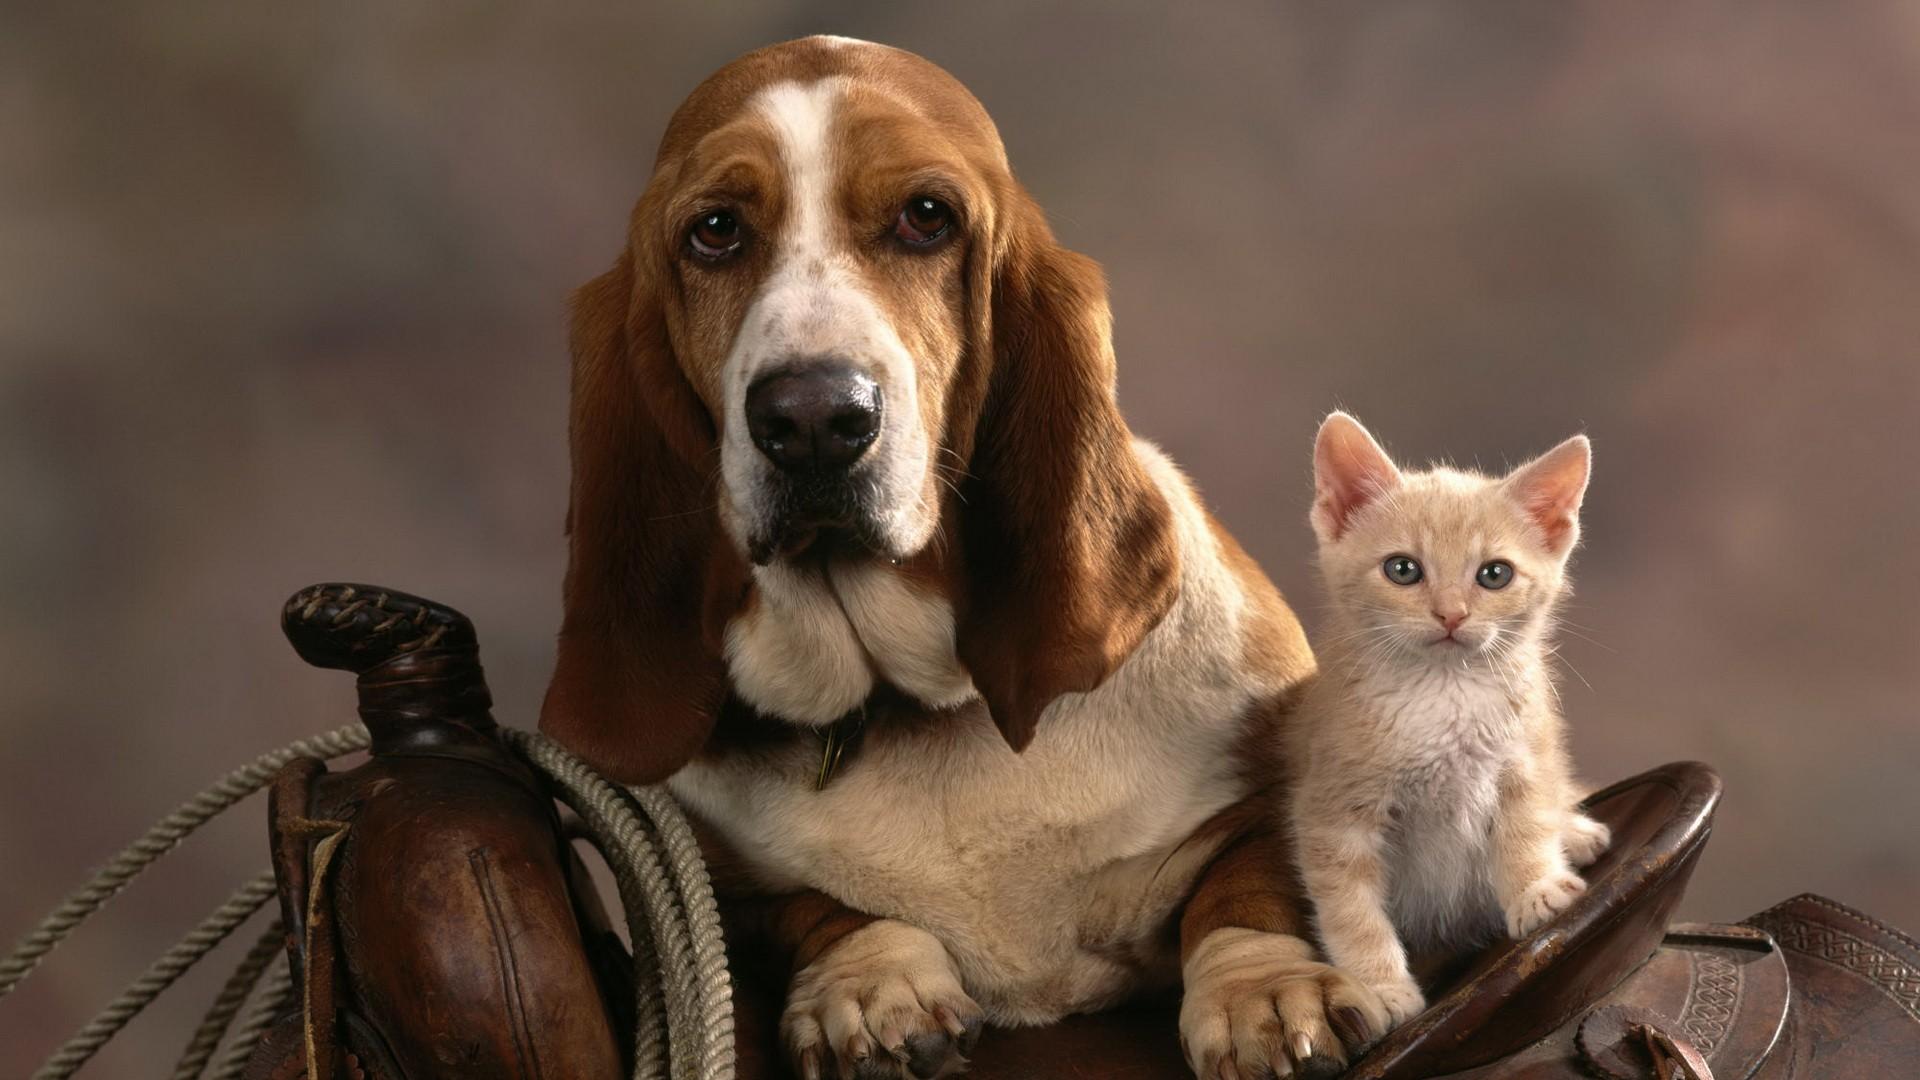 Вислоухая собака и кошка на седле 1920x1080